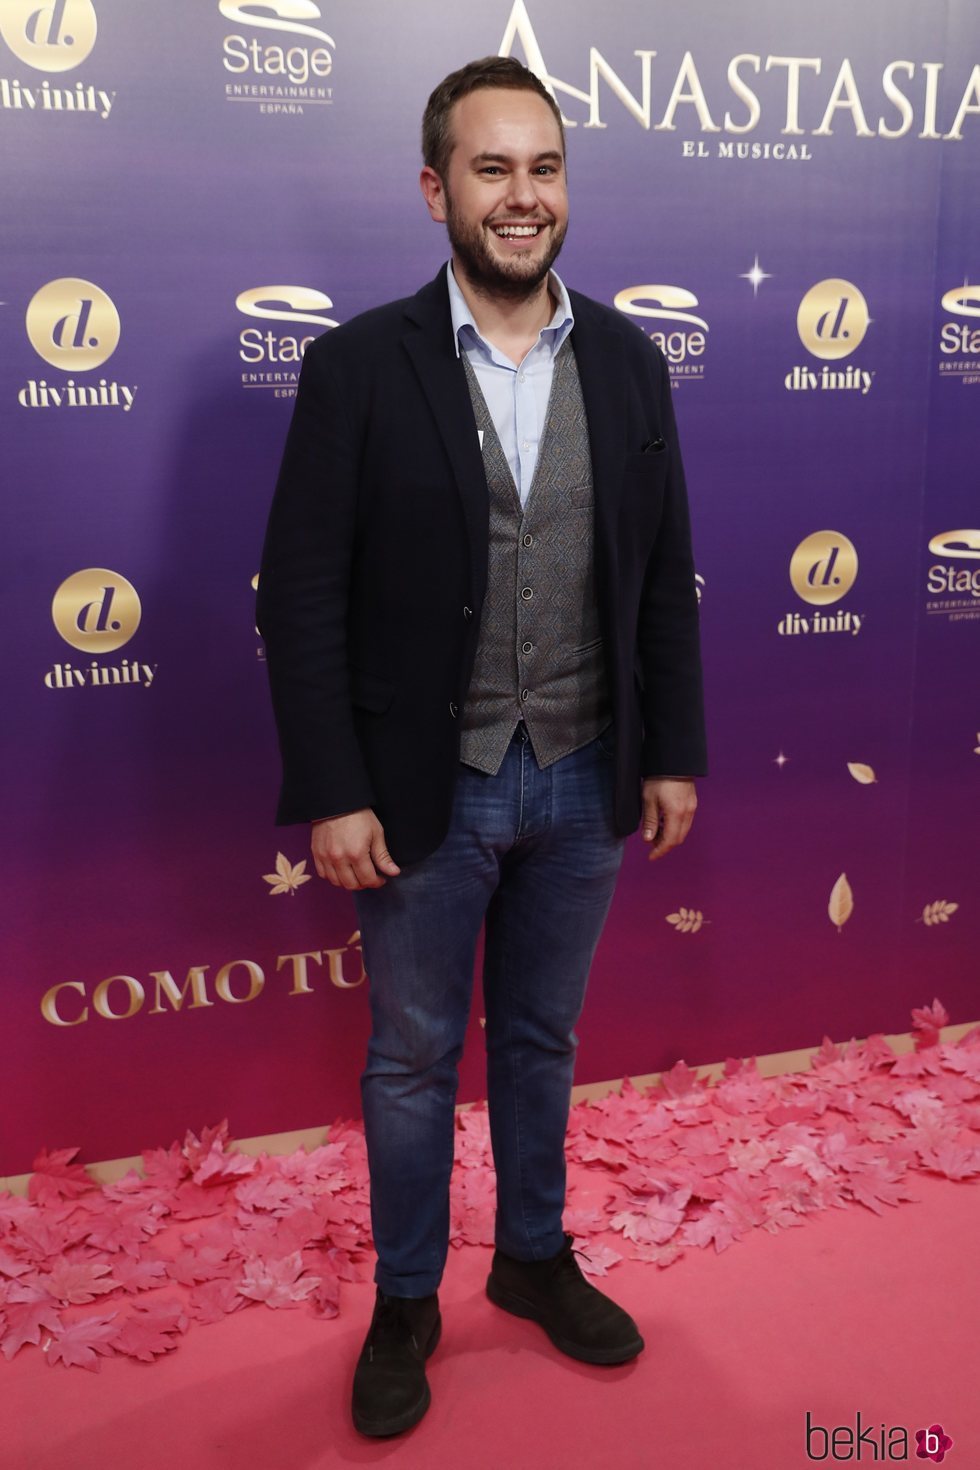 Jorge Blas en el estreno del musical 'Anastasia' en Madrid